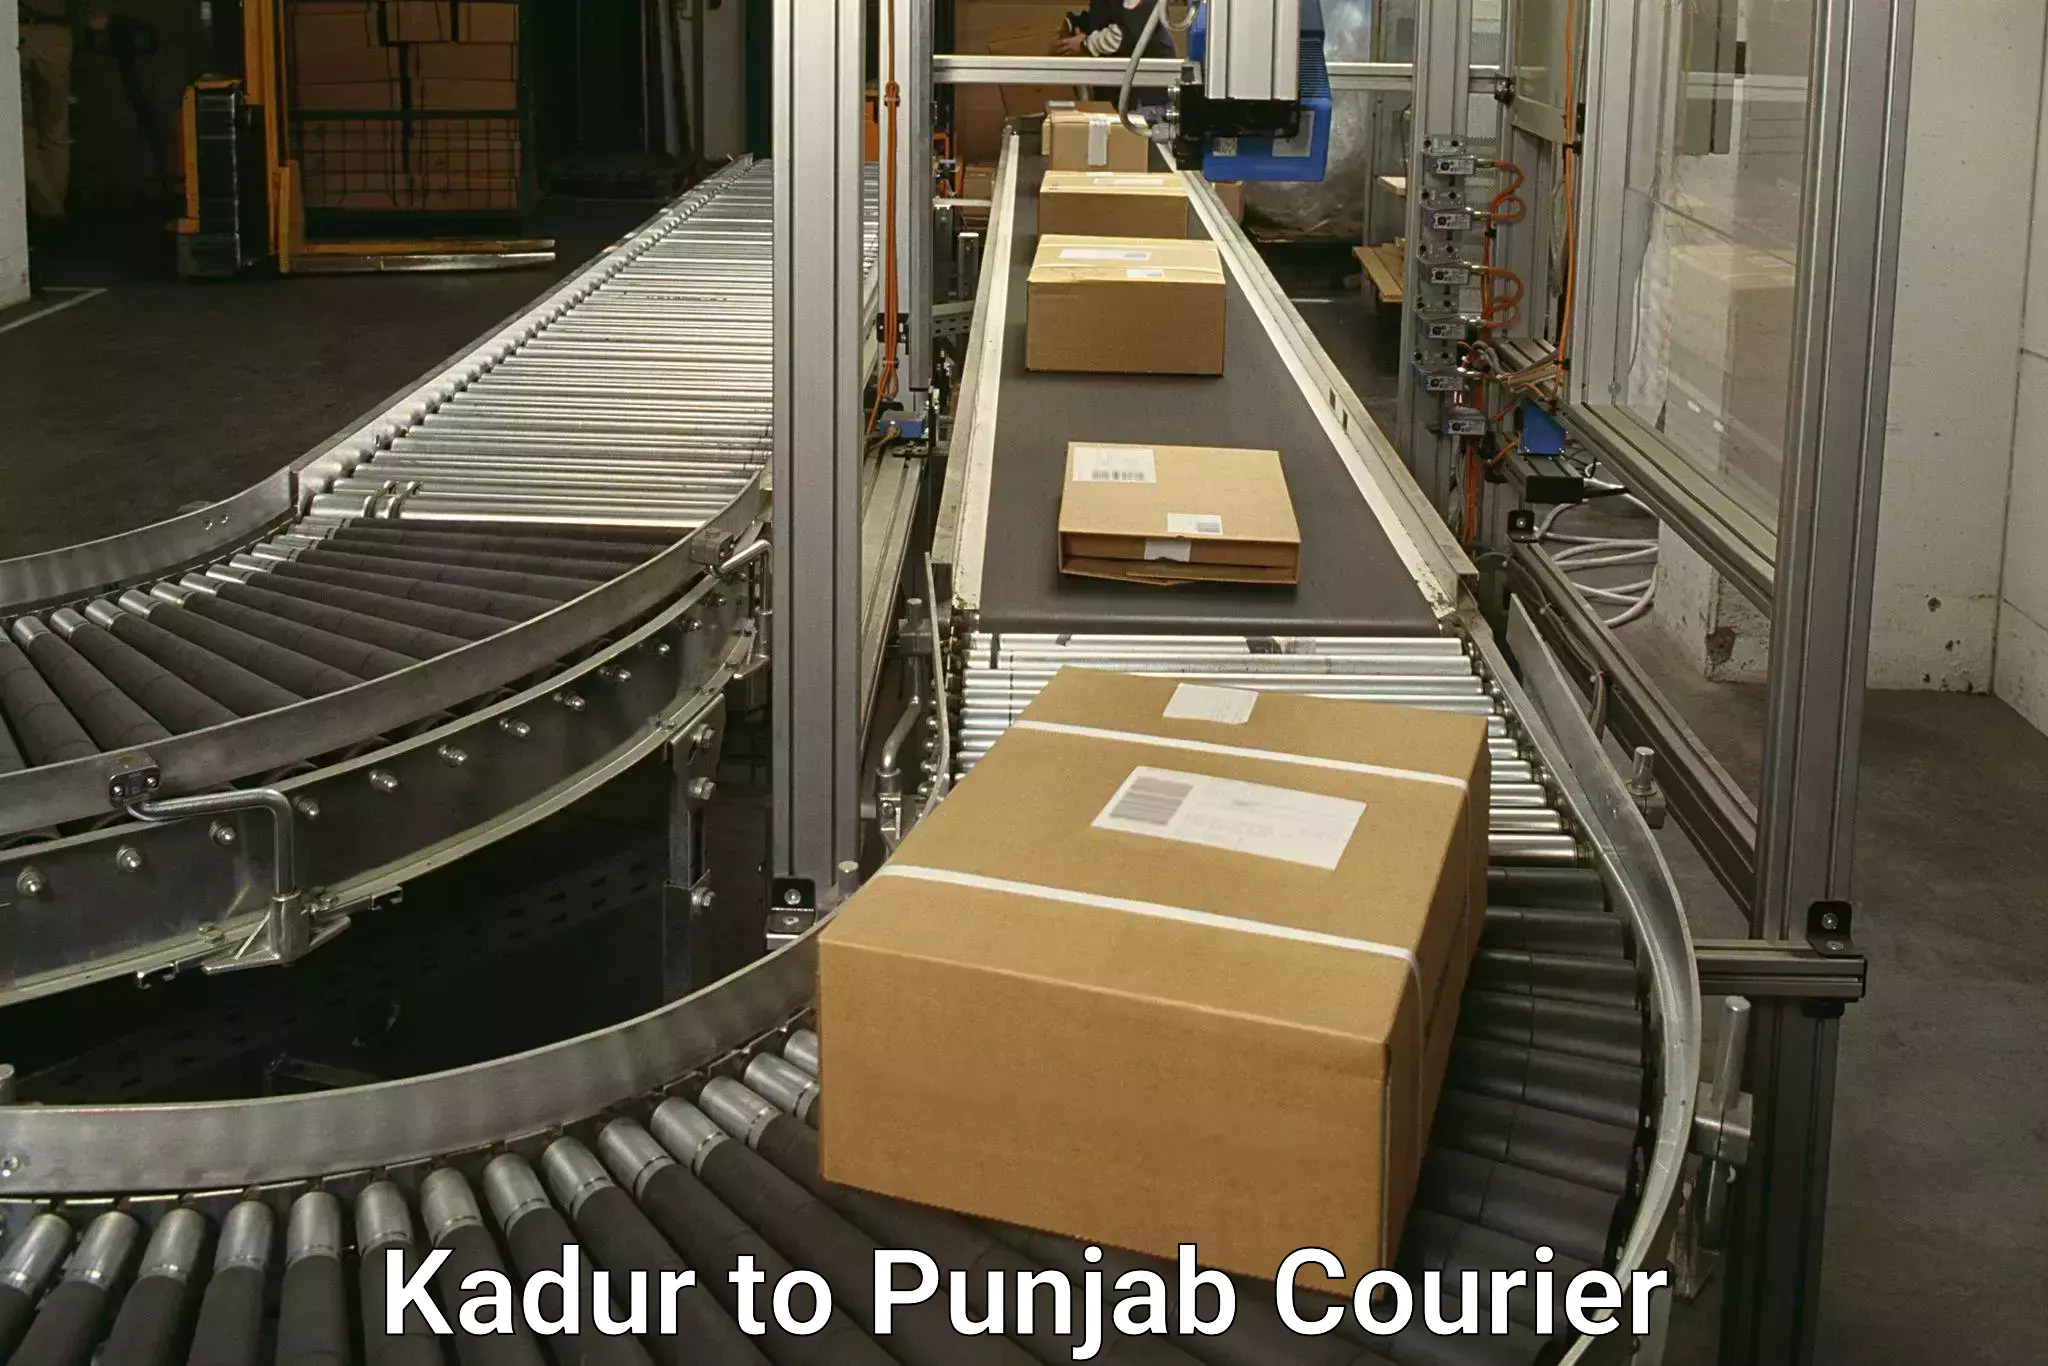 Reliable parcel services Kadur to Punjab